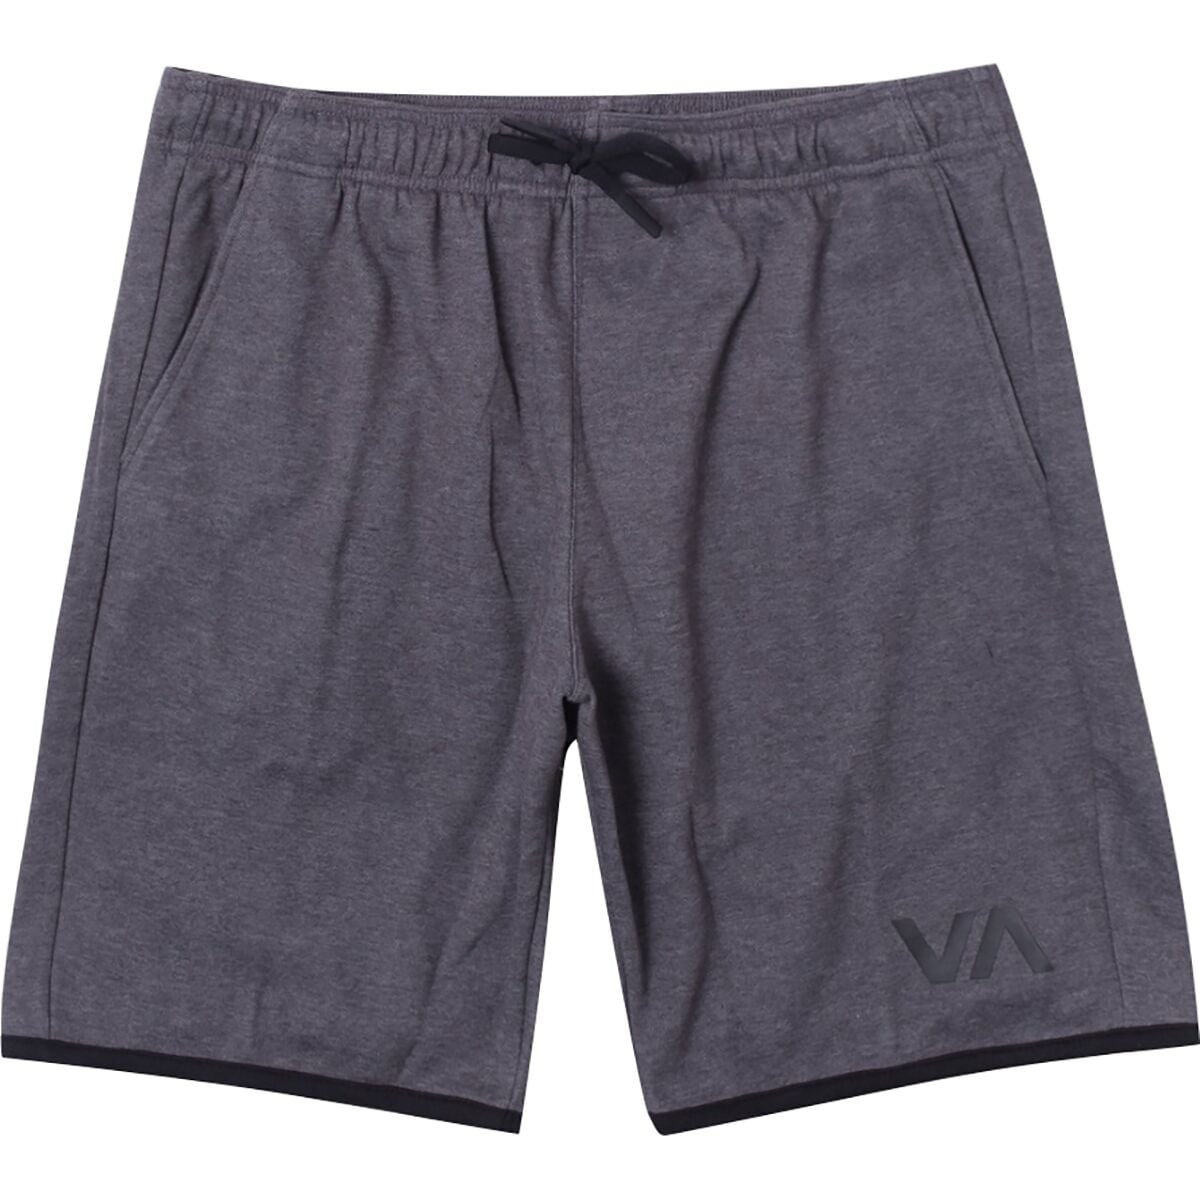 RVCA Sport IV Short - Men's | Backcountry.com